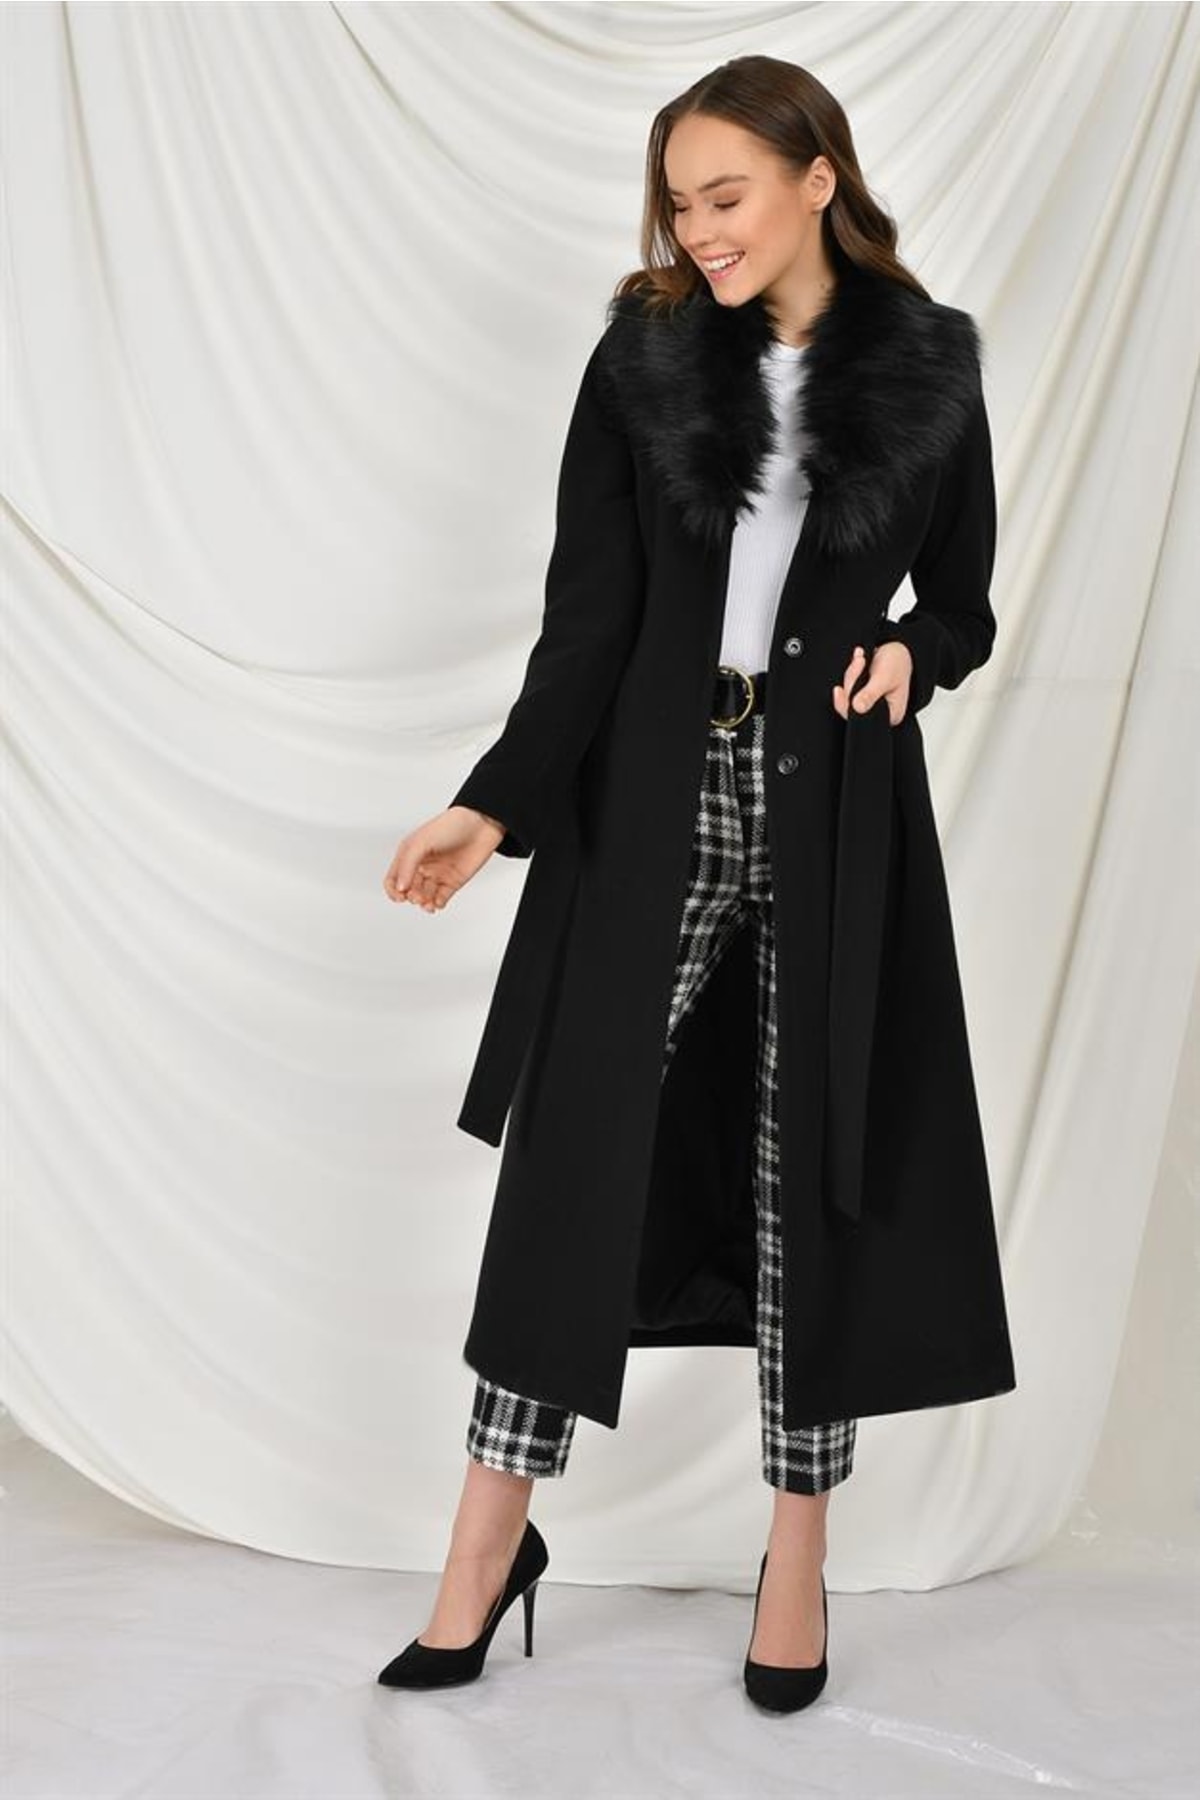 женское хлопковое пальто с большим меховым воротником свободного покроя средней длины m289 Пальто средней длины с меховым воротником на талии, черный 3397 Concept.